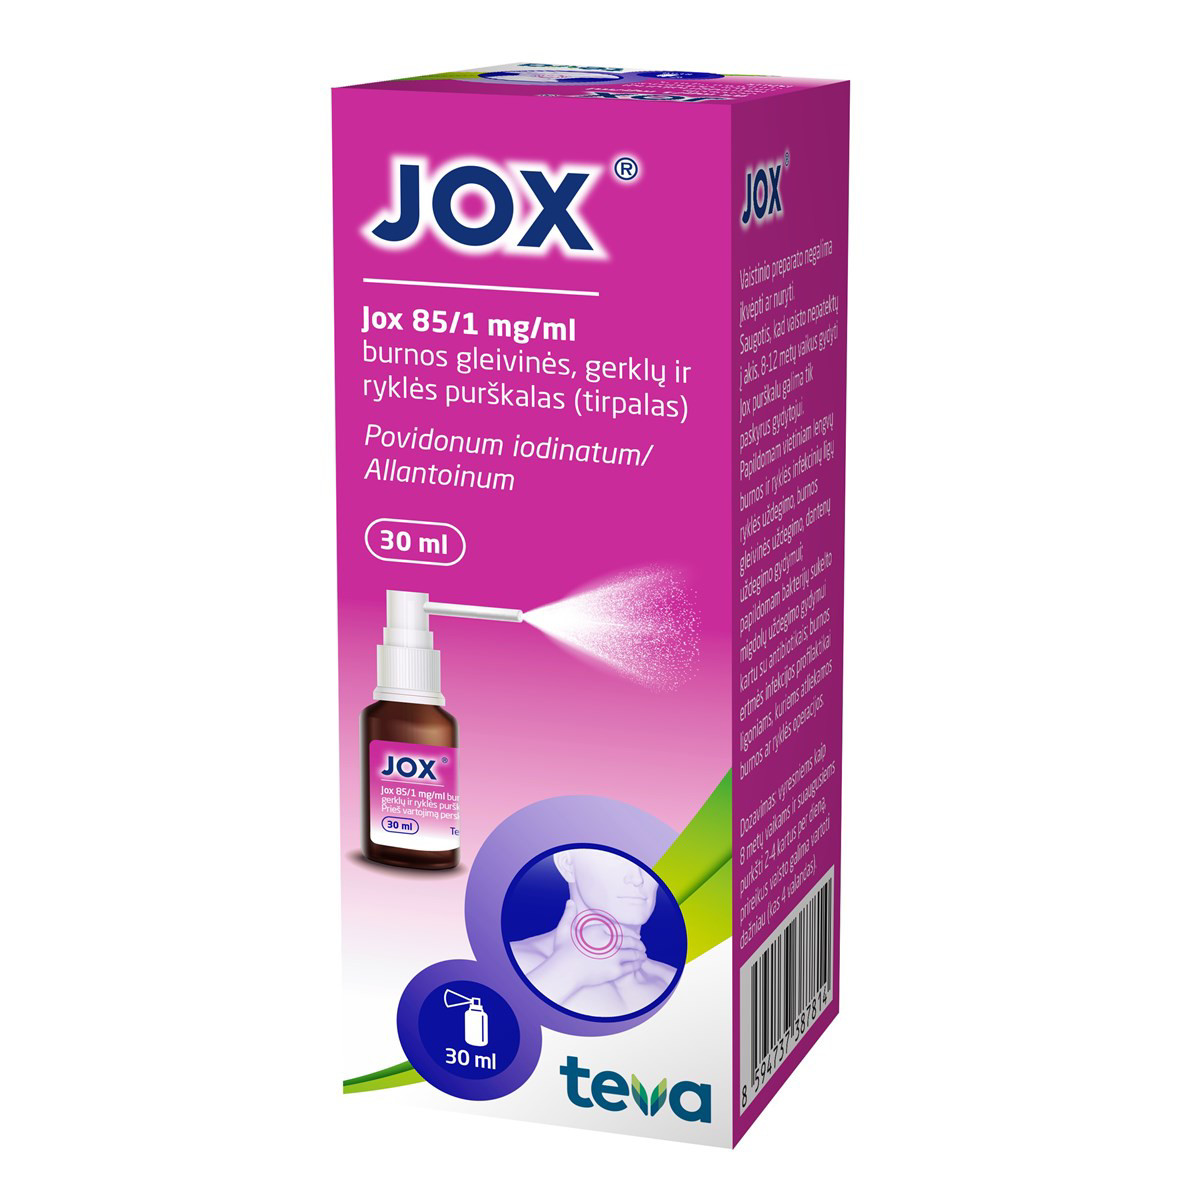 JOX, 85/1 mg/ml, burnos gleivinės, gerklų ir ryklės purškalas (tirpalas), 30 ml